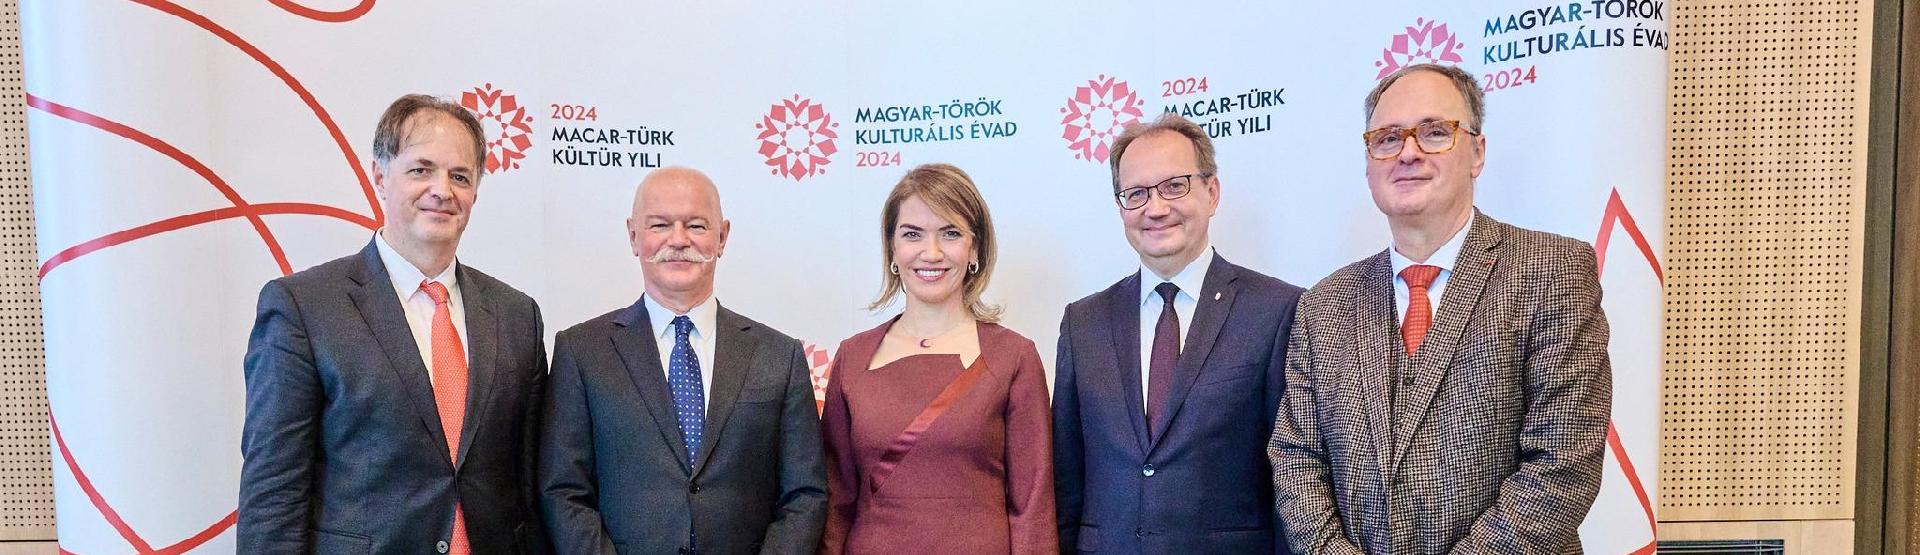 2024 Macar-Türk Kültür Yılı ilan edildi